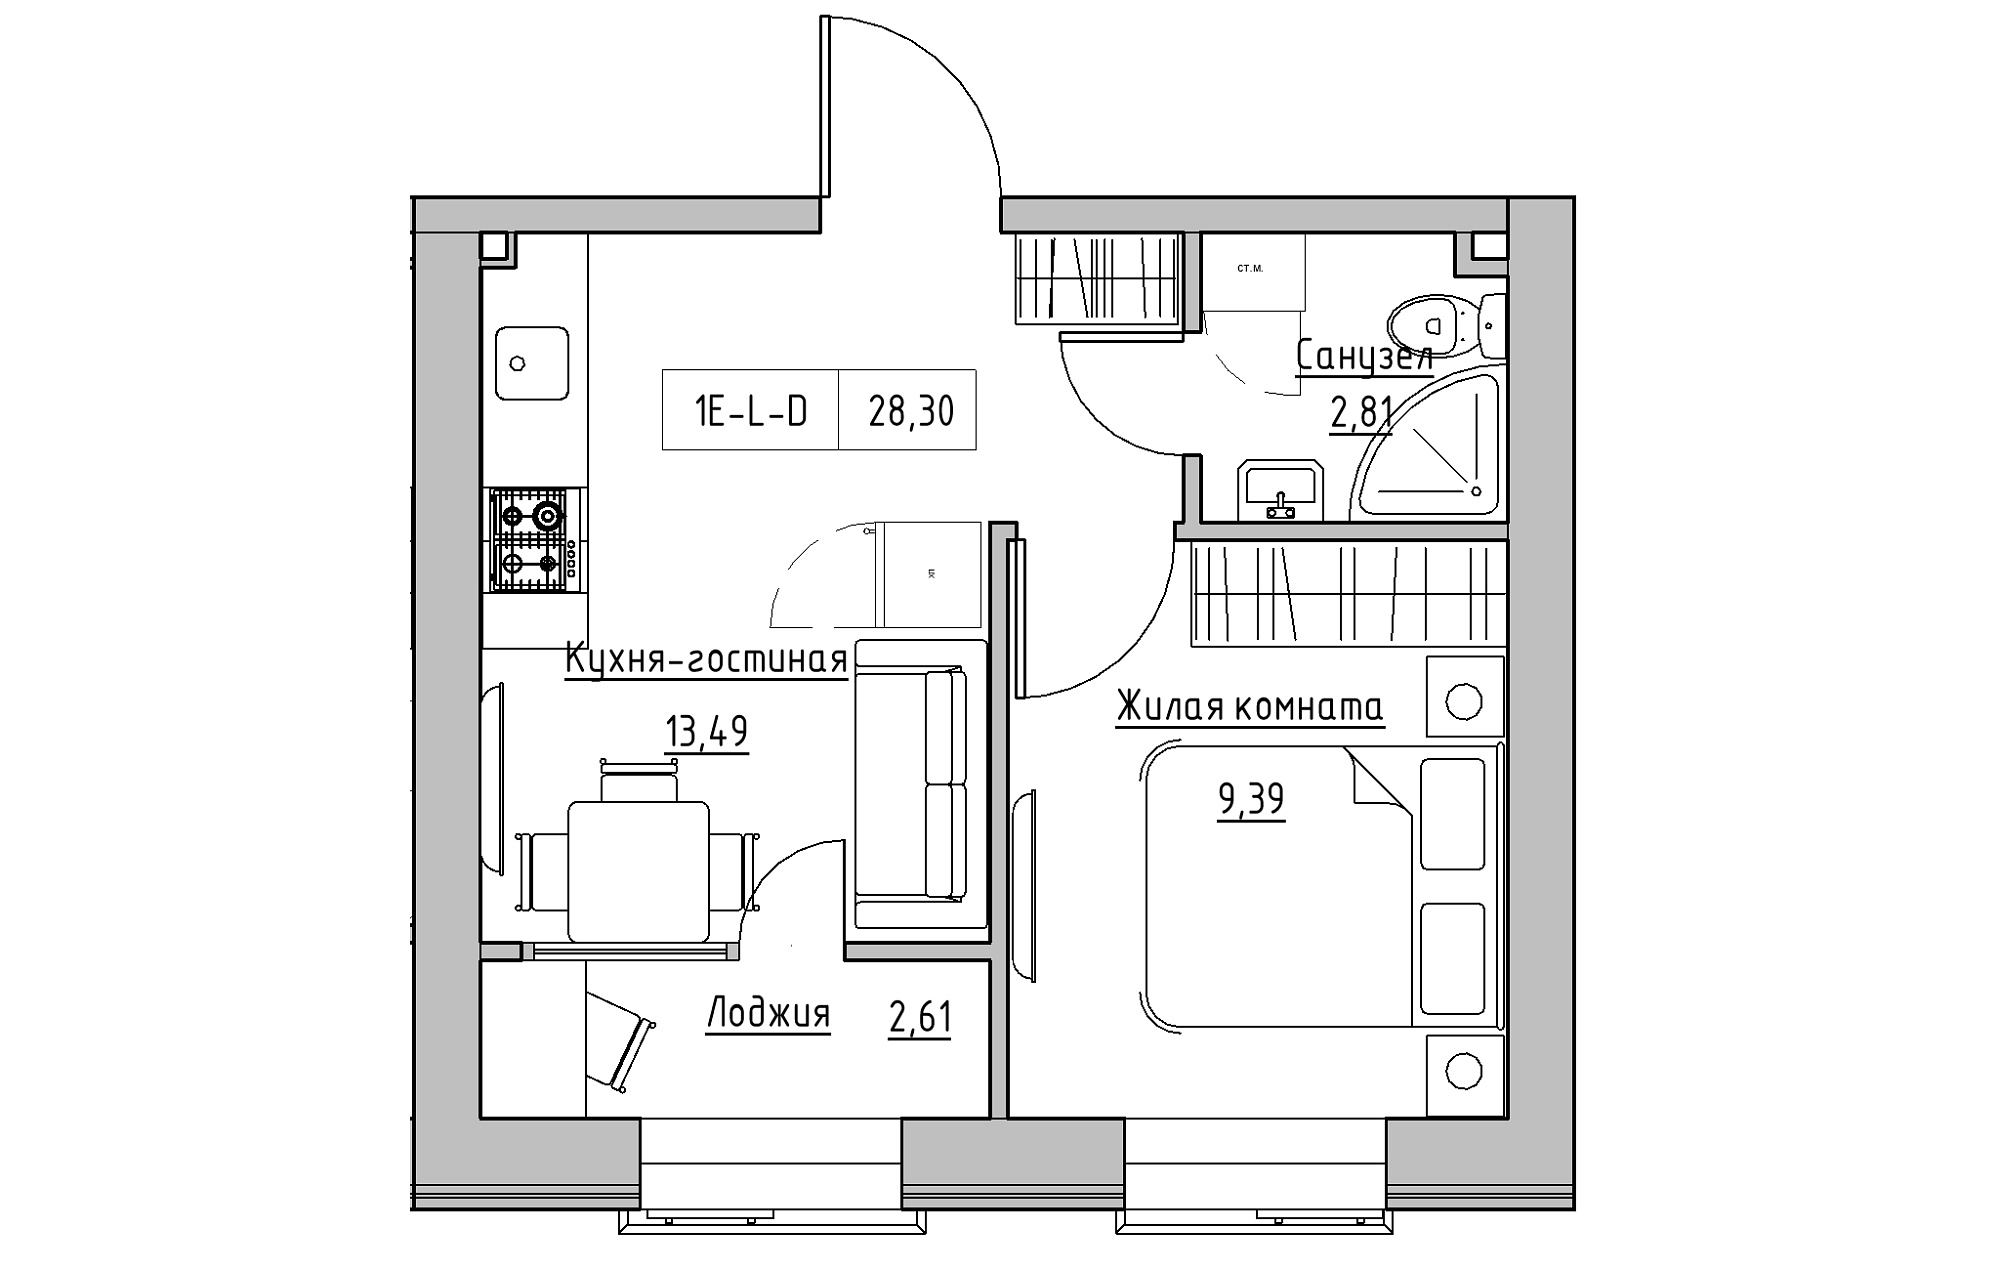 Планування 1-к квартира площею 28.3м2, KS-018-02/0001.